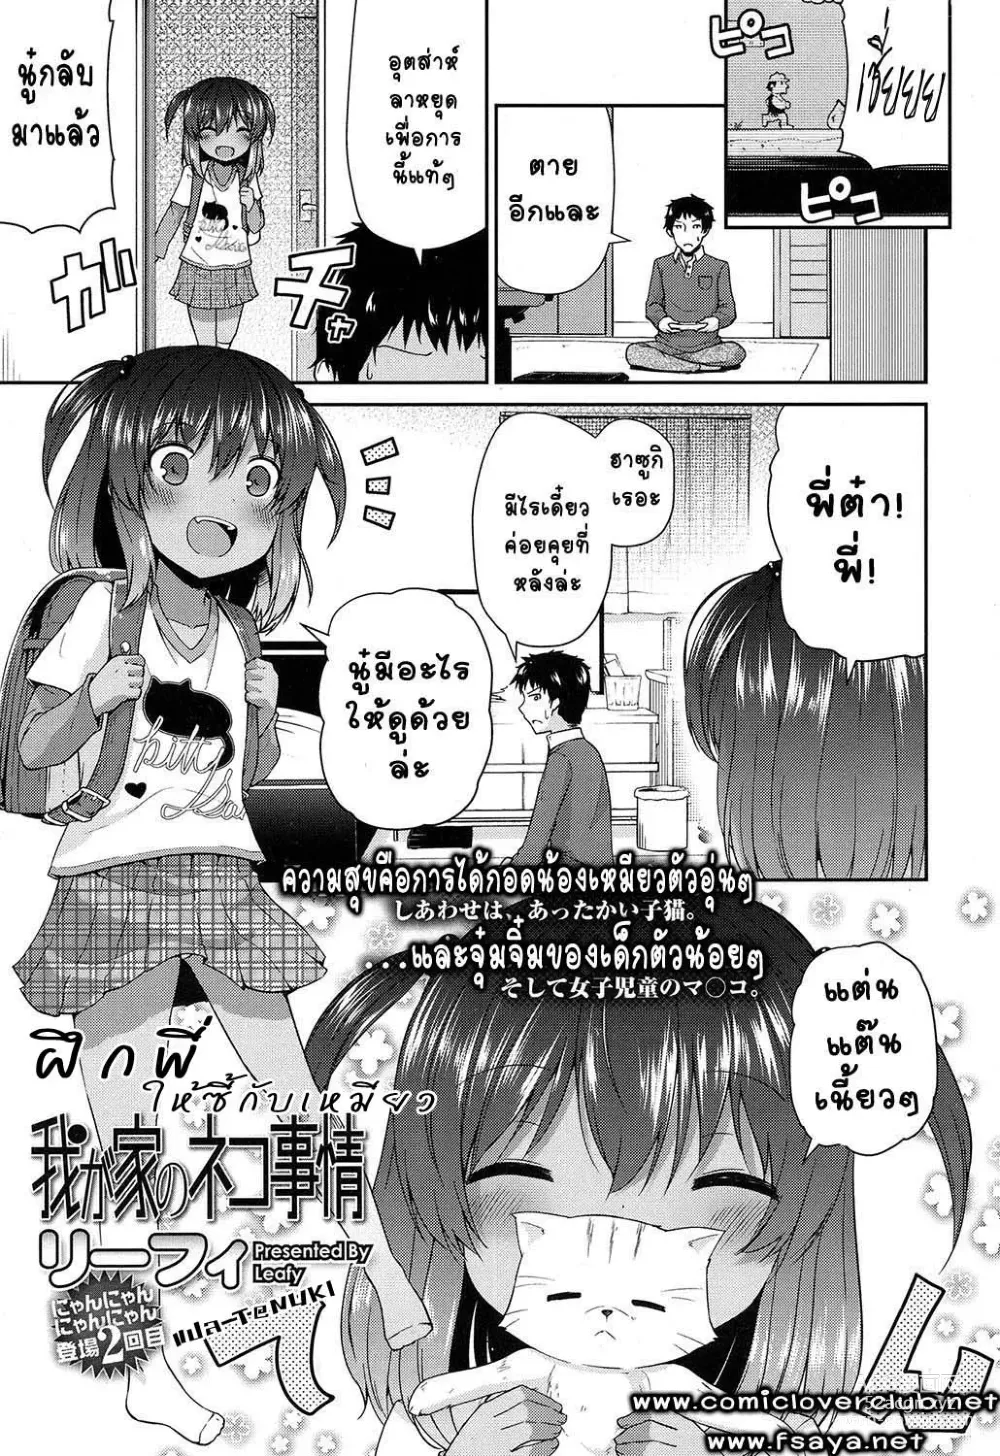 Page 1 of manga Waga Uchi no Neko Jijou